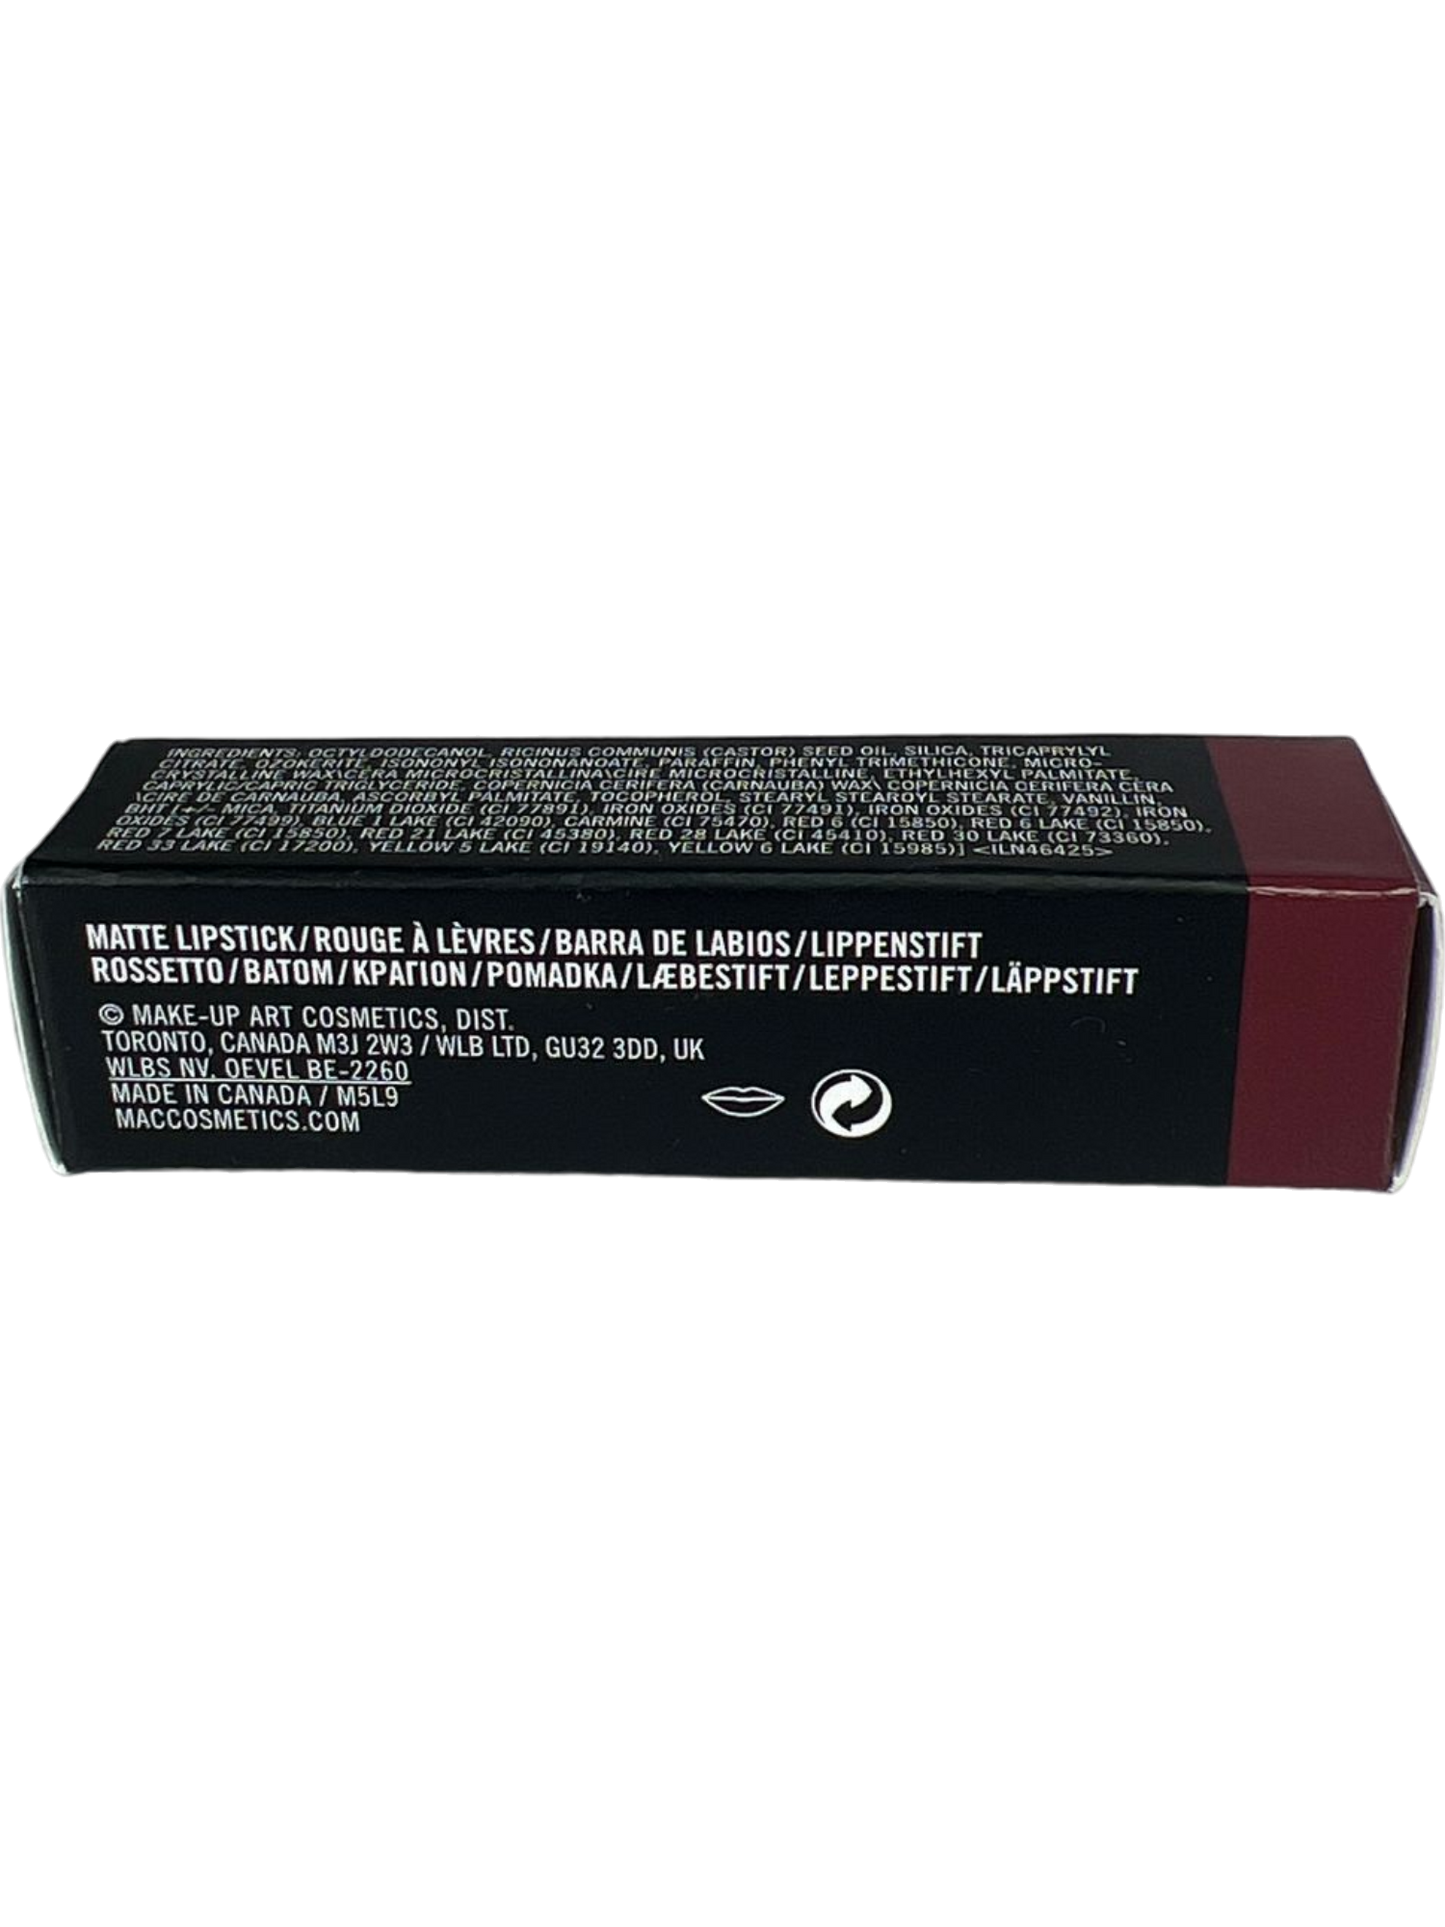 MAC Matte Lipstick Viva Glam III - Muted Brownish-Plum